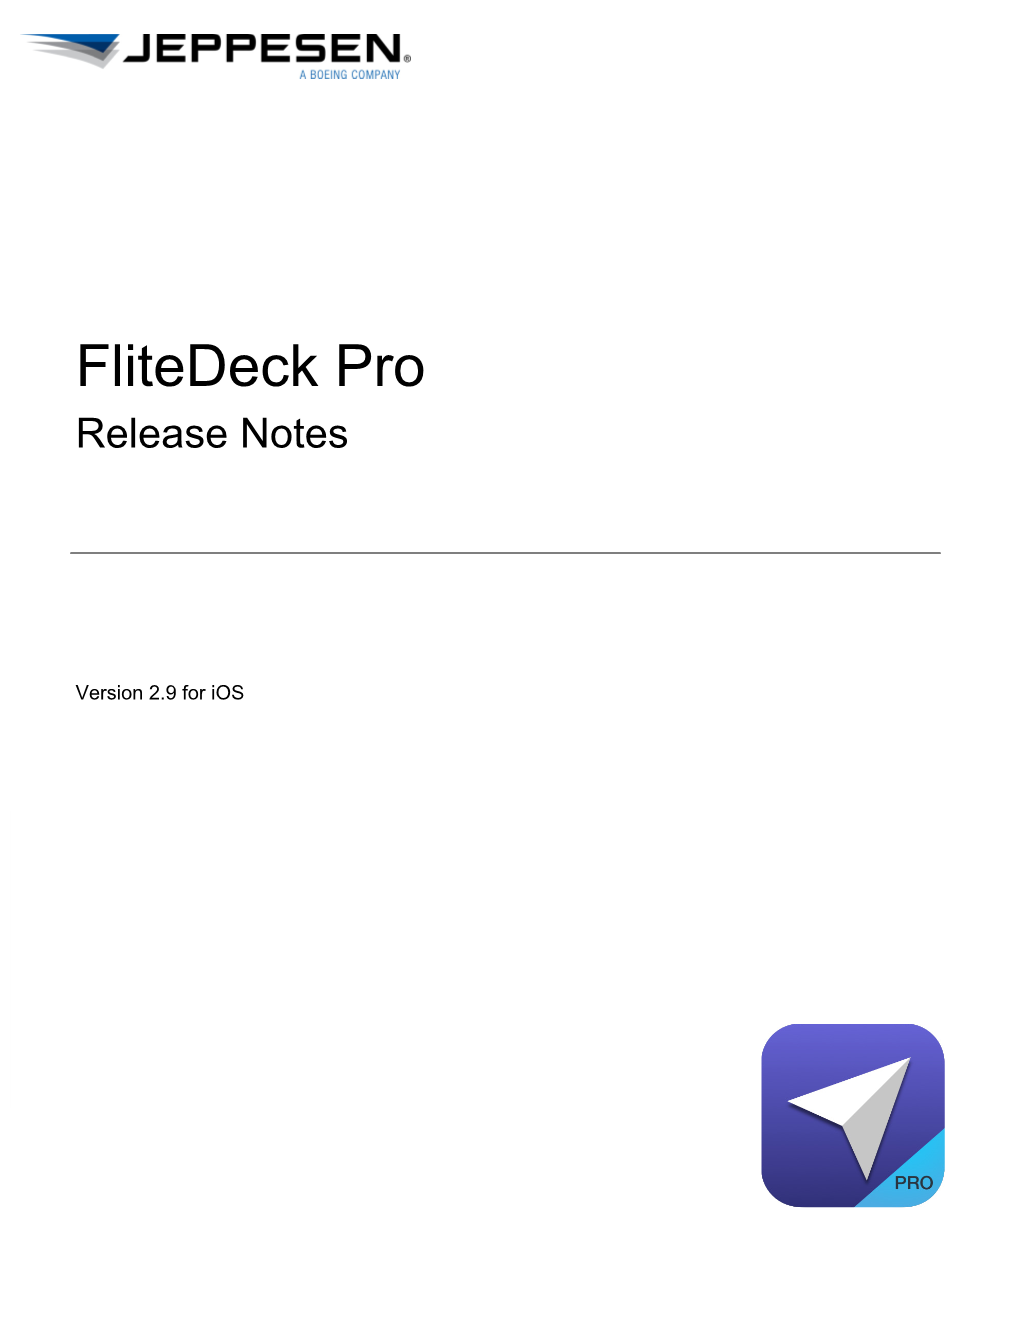 Jeppesen Flitedeck Pro Release Notes